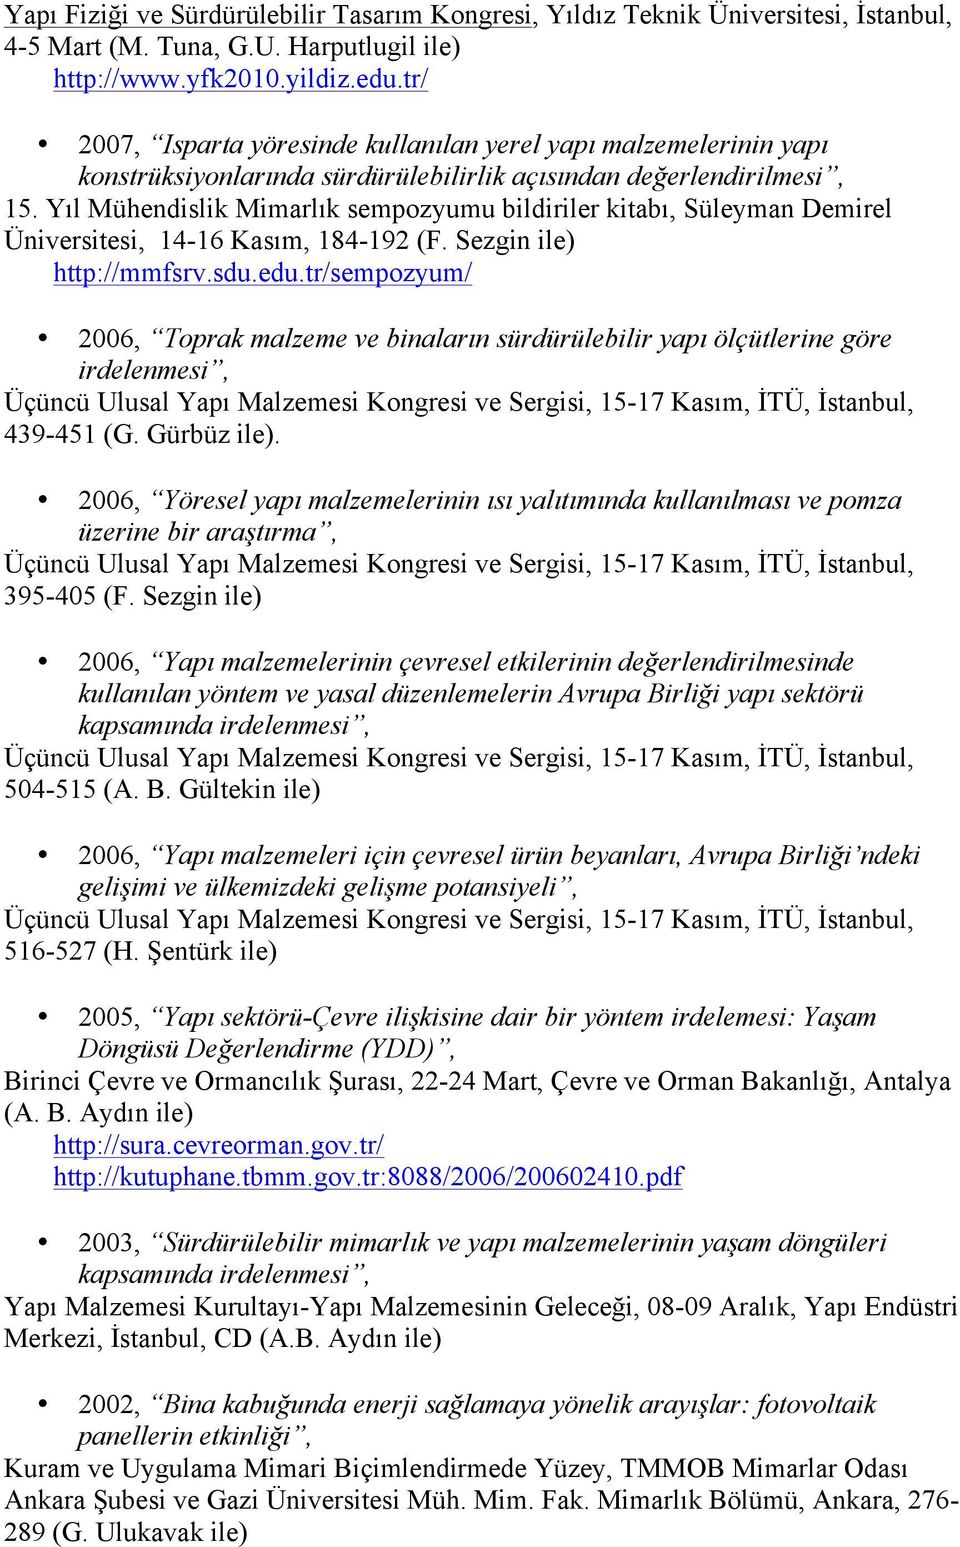 Yıl Mühendislik Mimarlık sempozyumu bildiriler kitabı, Süleyman Demirel Üniversitesi, 14-16 Kasım, 184-192 (F. Sezgin ile) http://mmfsrv.sdu.edu.